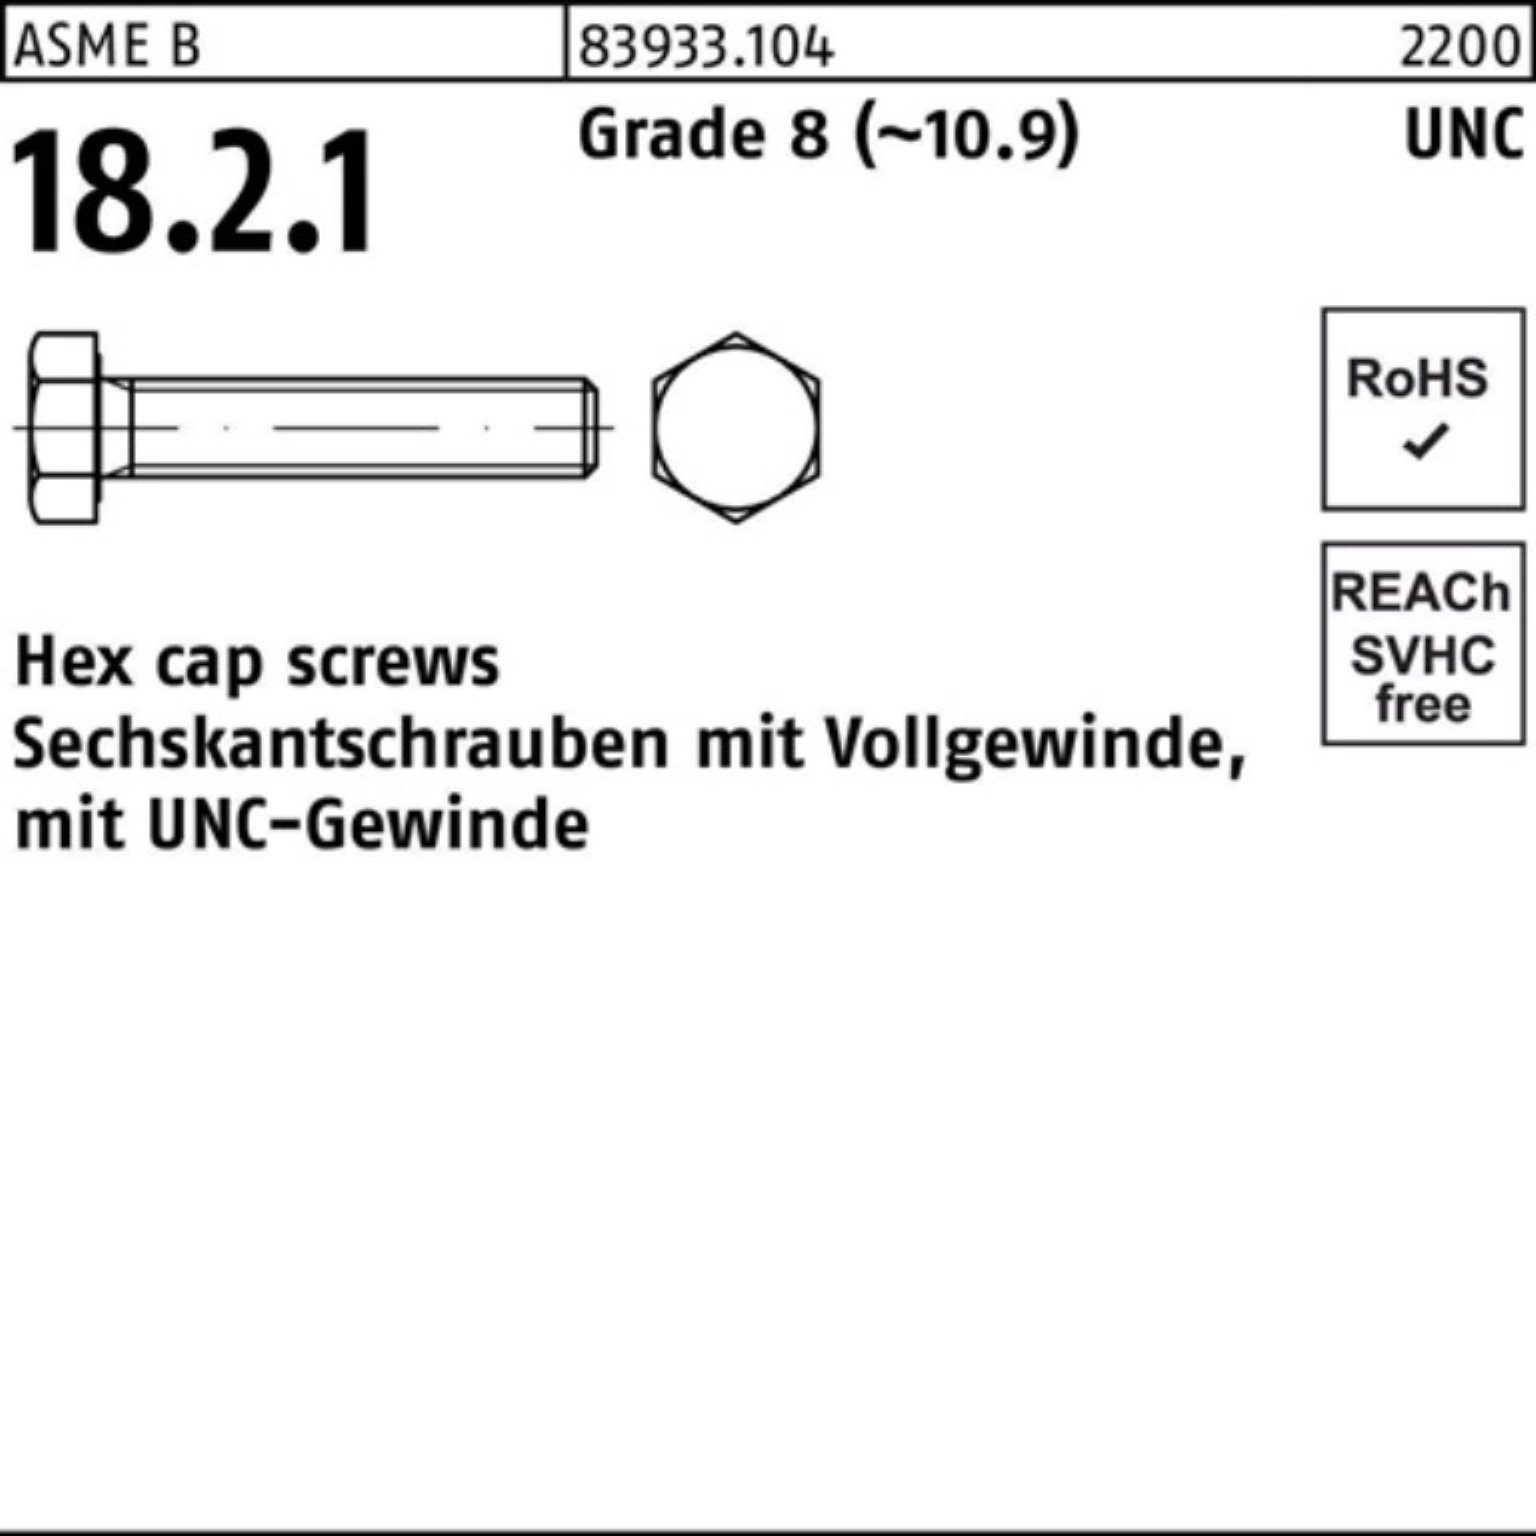 Reyher Sechskantschraube 100er Pack Sechskantschraube R 83933 UNC-Gewinde VG 1/2x 1 1/2 Grade 8